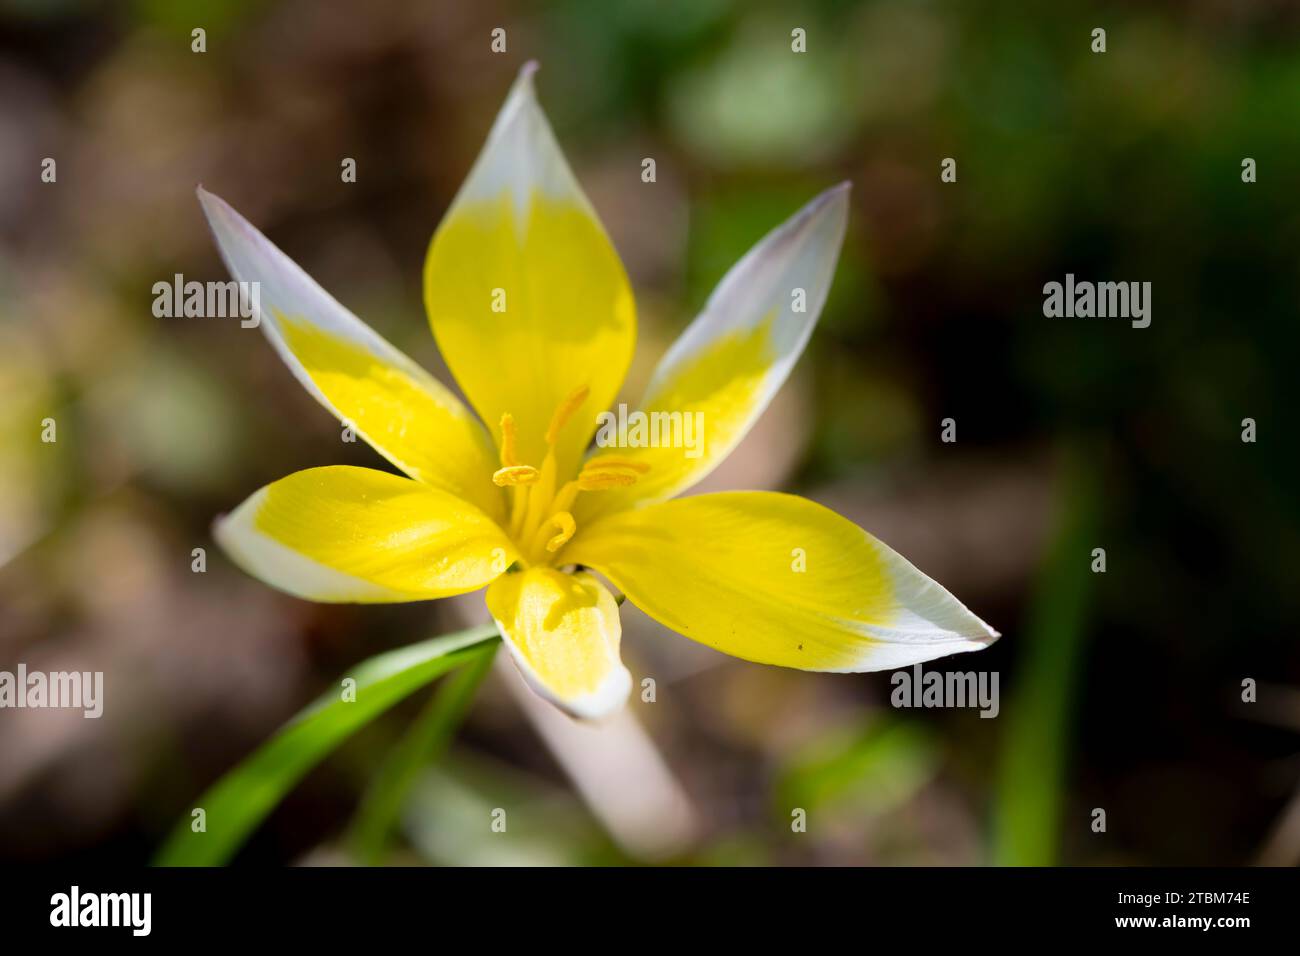 White-yellow flower of a Tarda tulip (Tulipa urumiensis), Bavaria, Germany Stock Photo